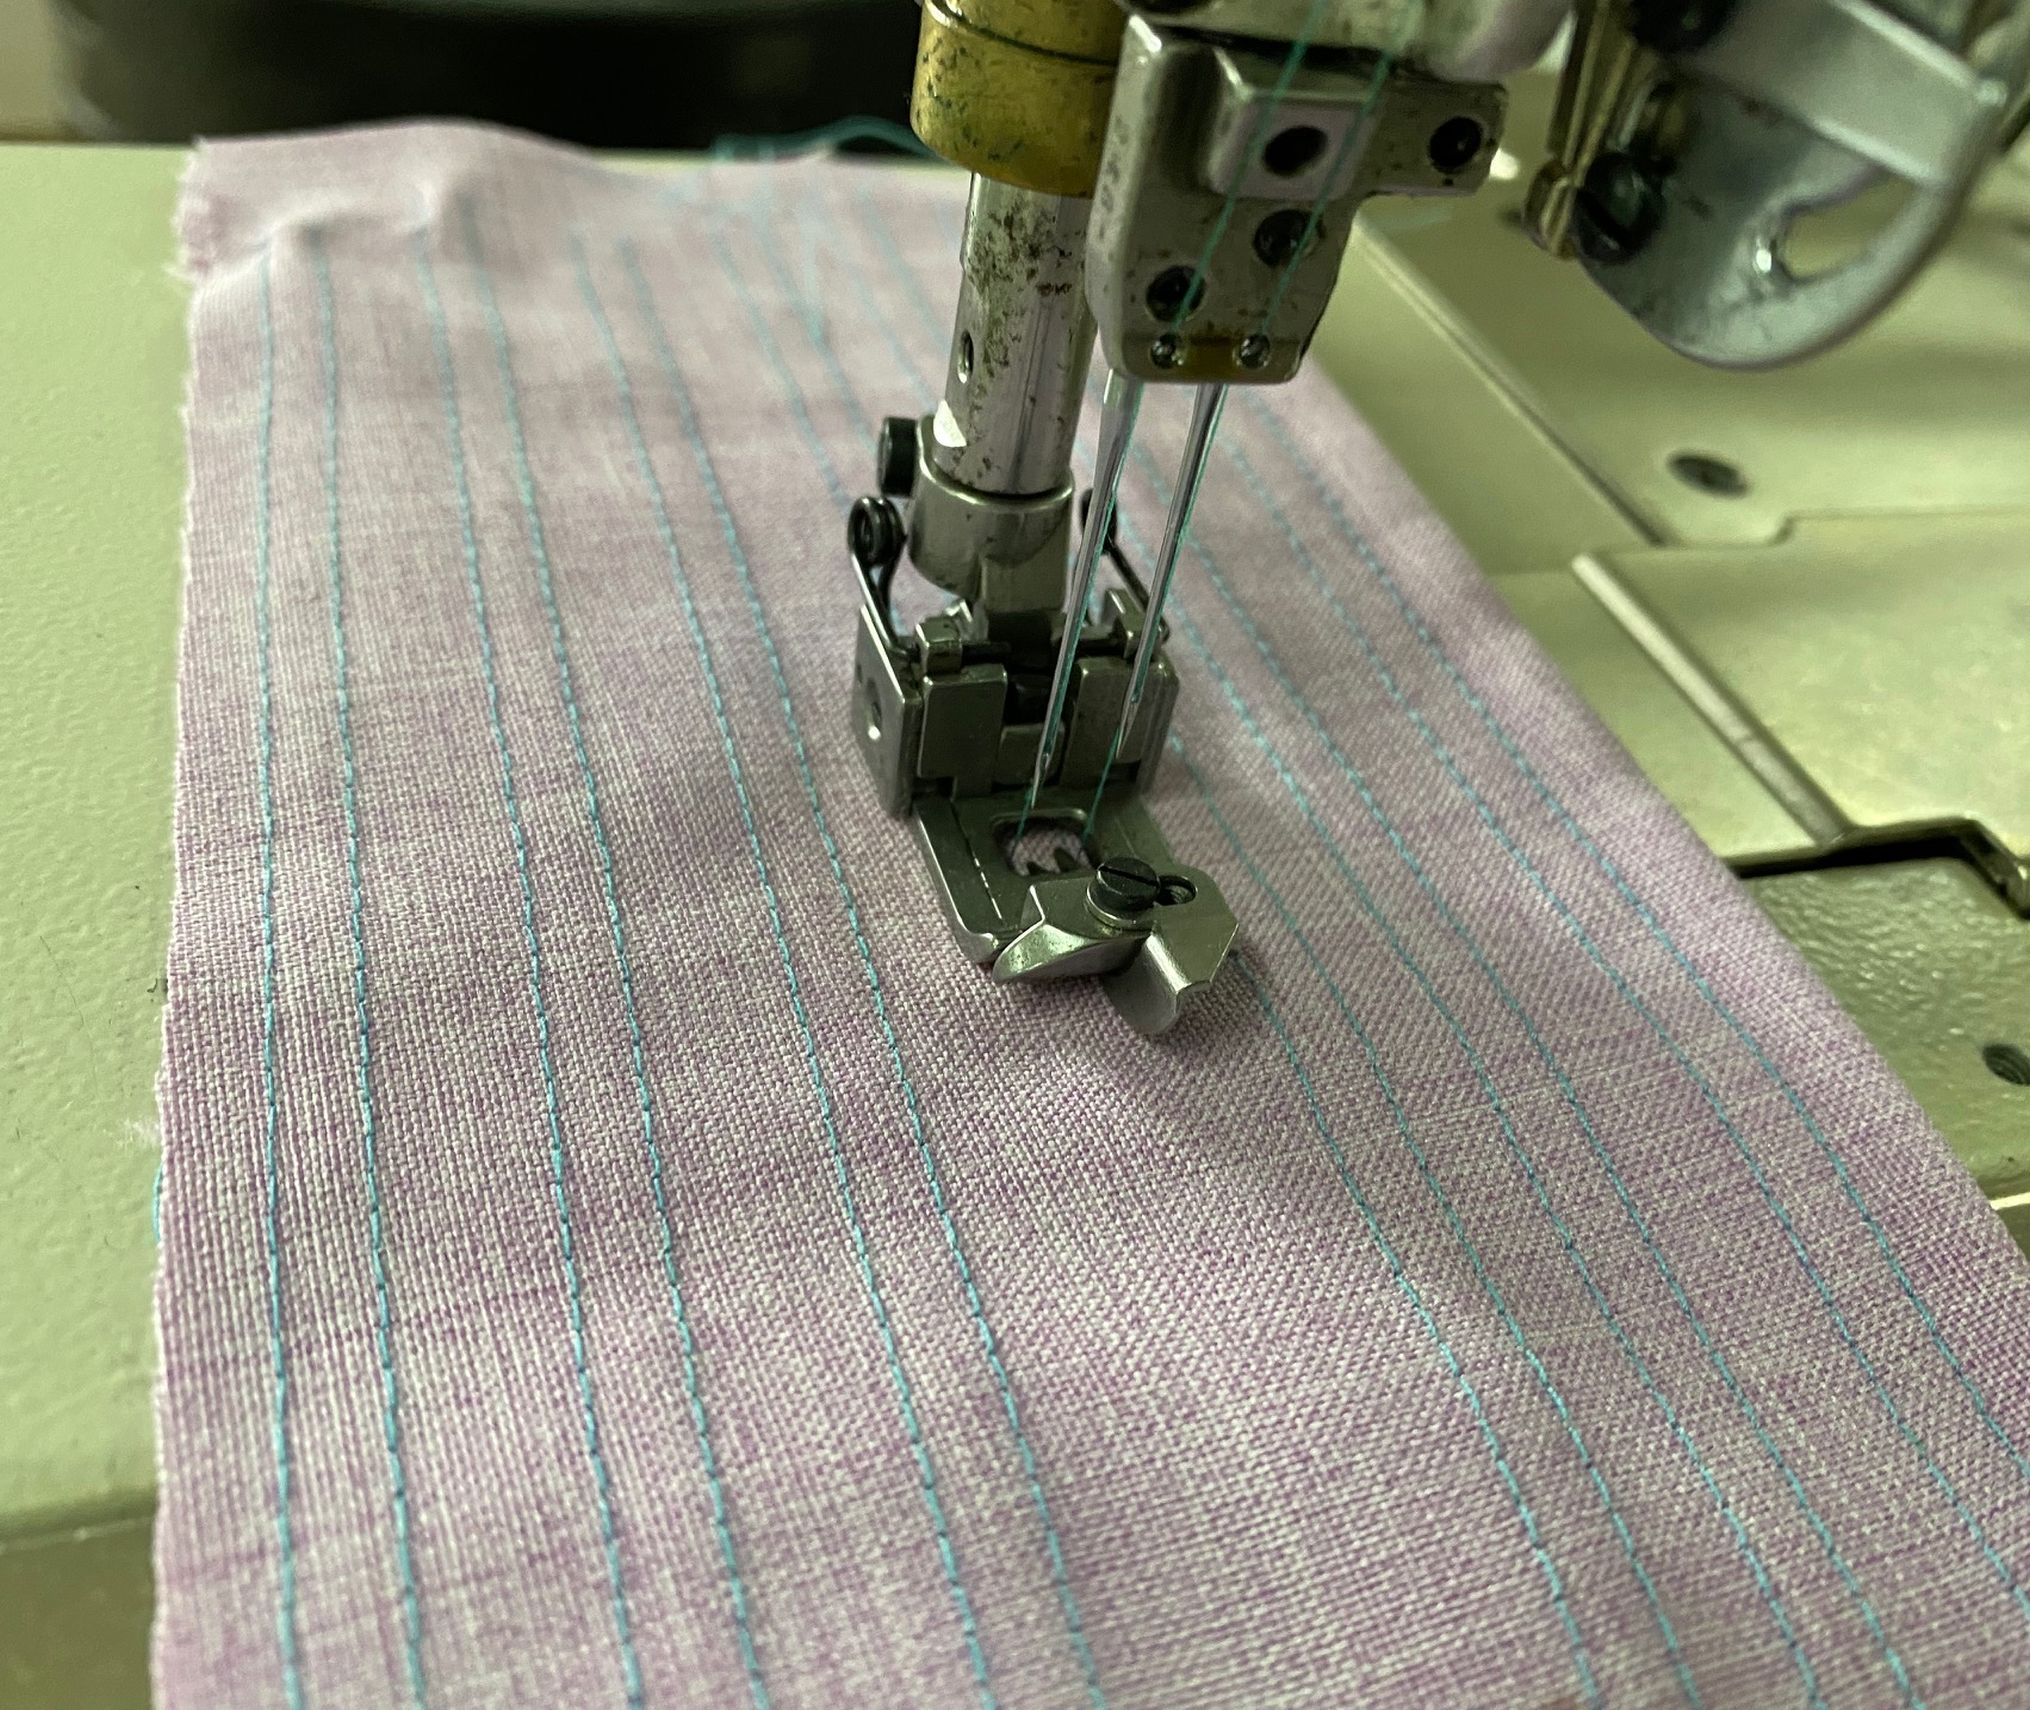 PEGASUS W1562-01J Interock Sewing Machine